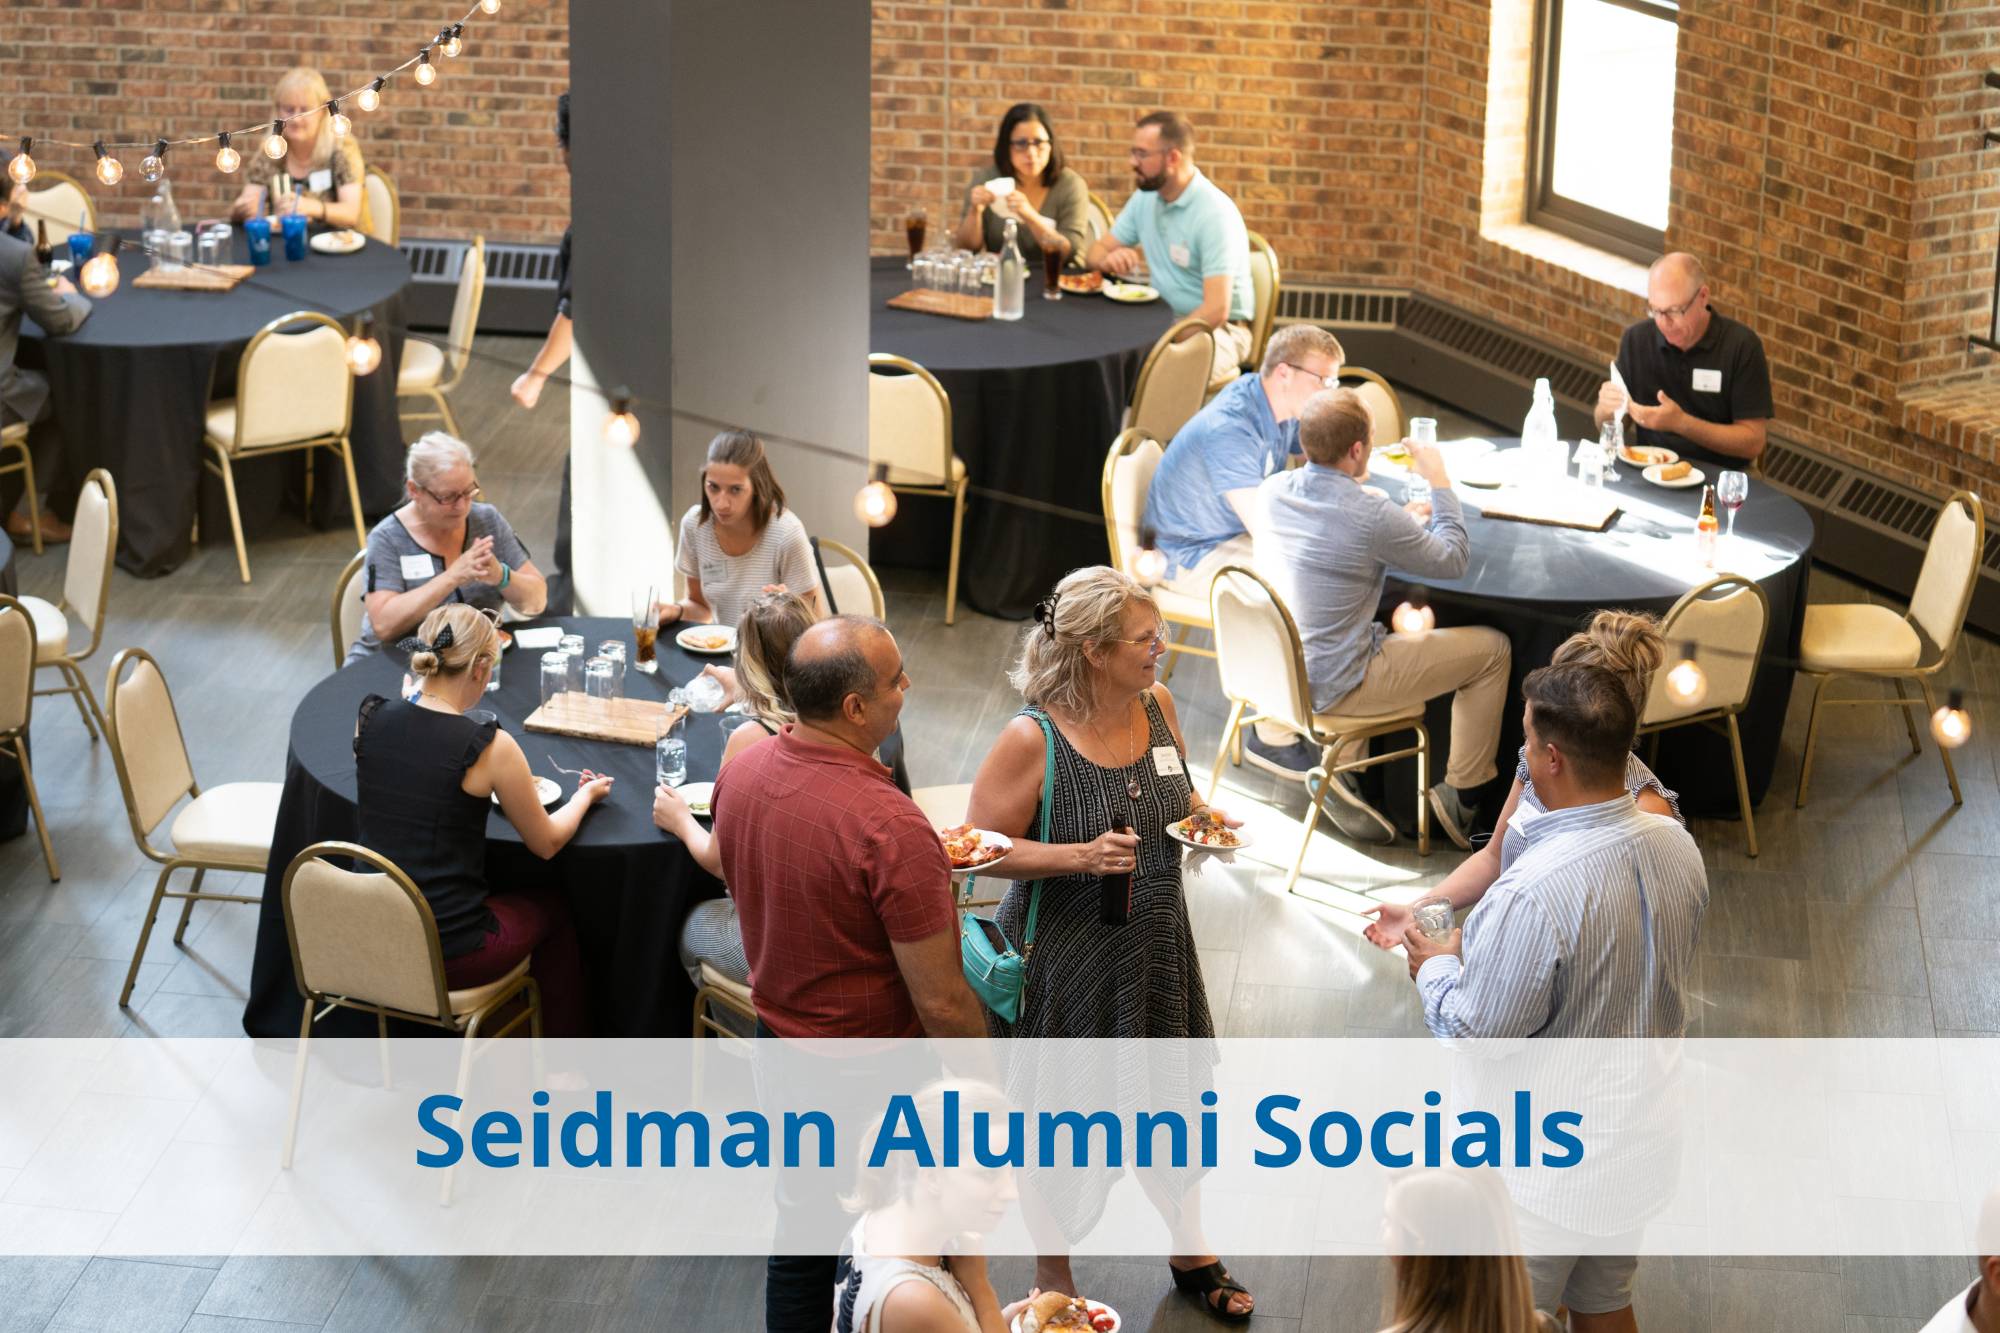 Seidman alumni socials